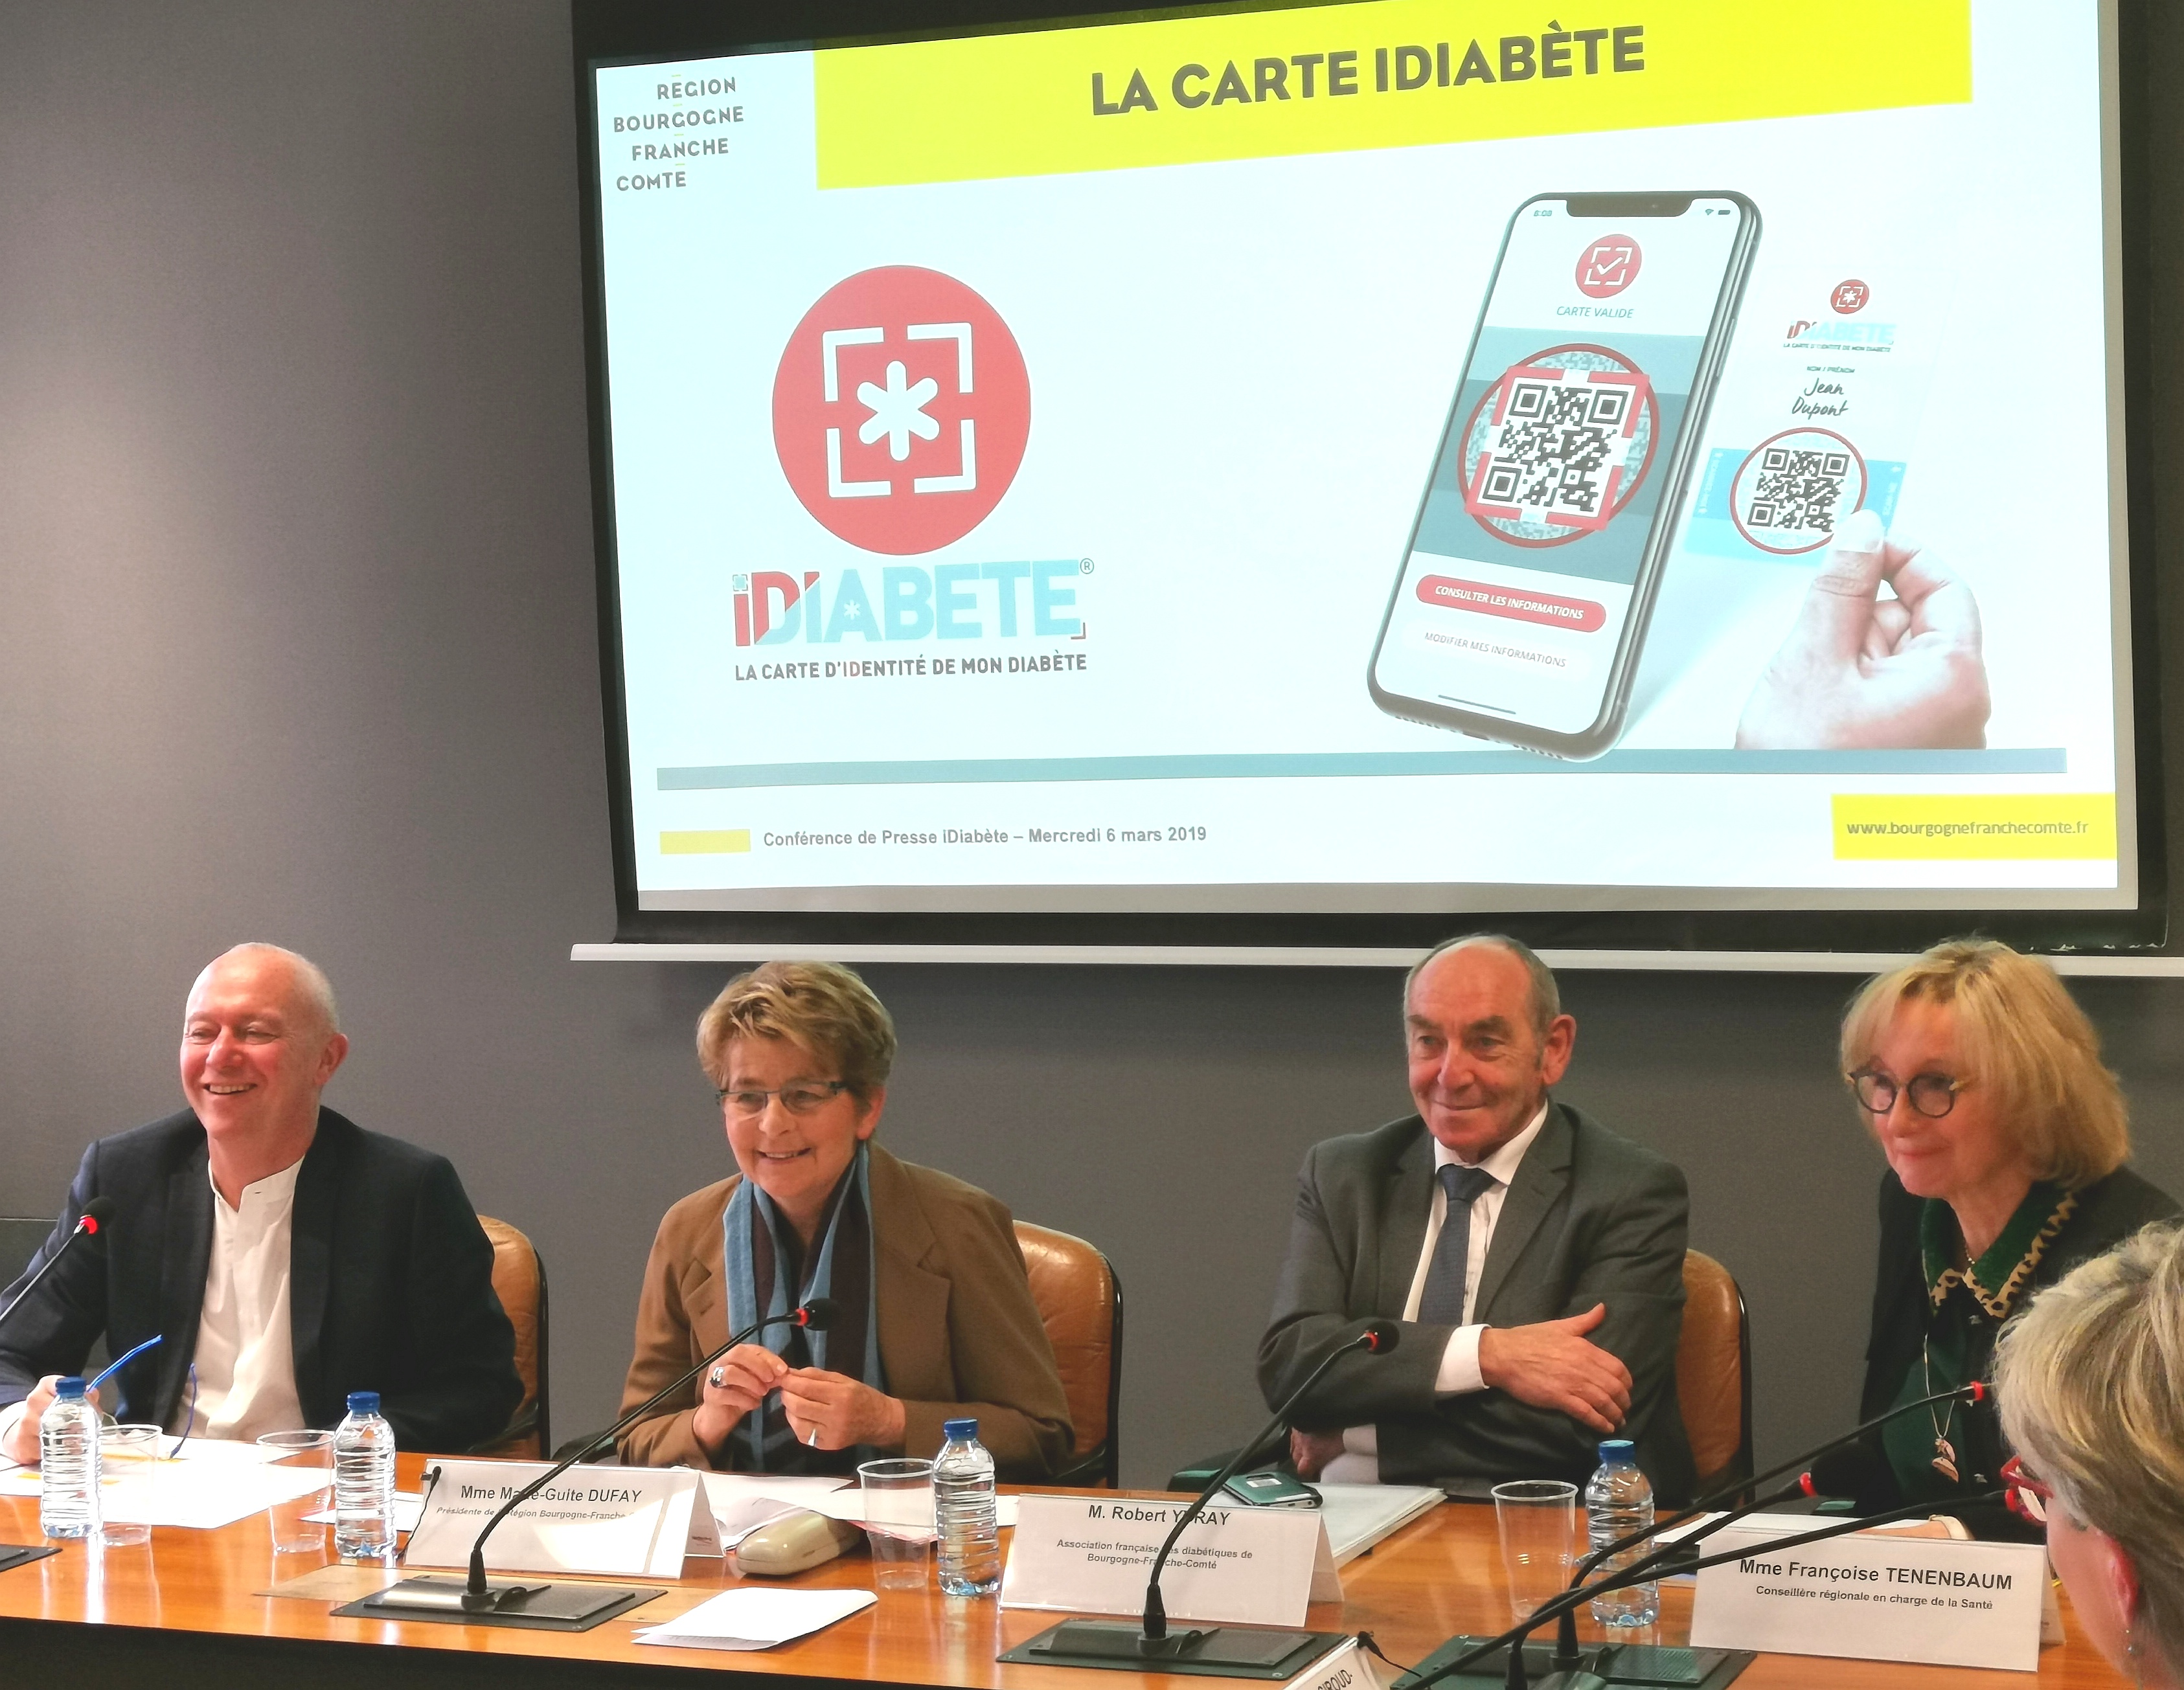 Lancement de la carte iDiabète, une première en France, mercredi 6 mars à Dijon (21)